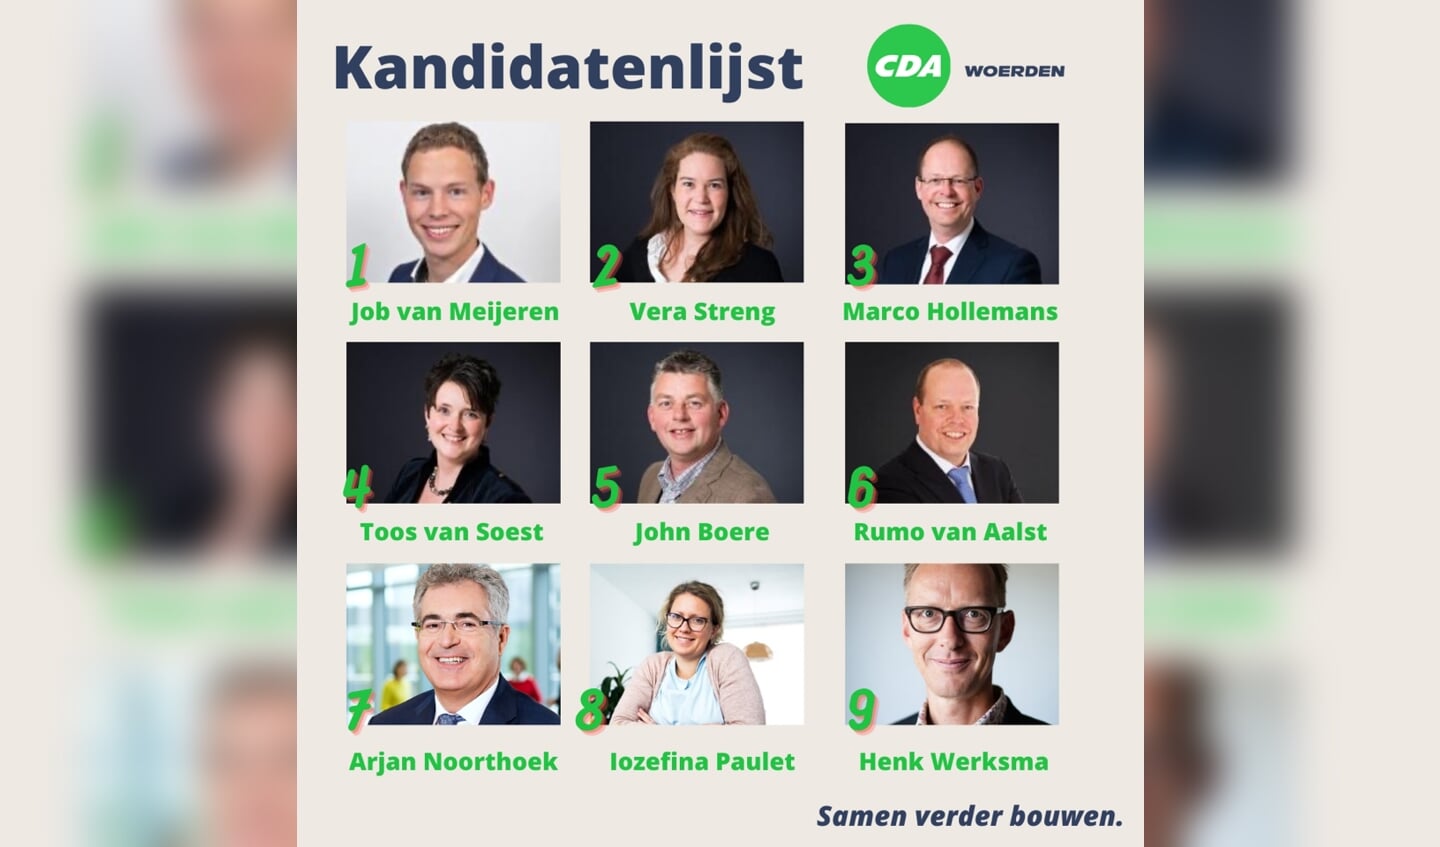 • De top-9 van de kandidatenlijst van het CDA in Woerden. 